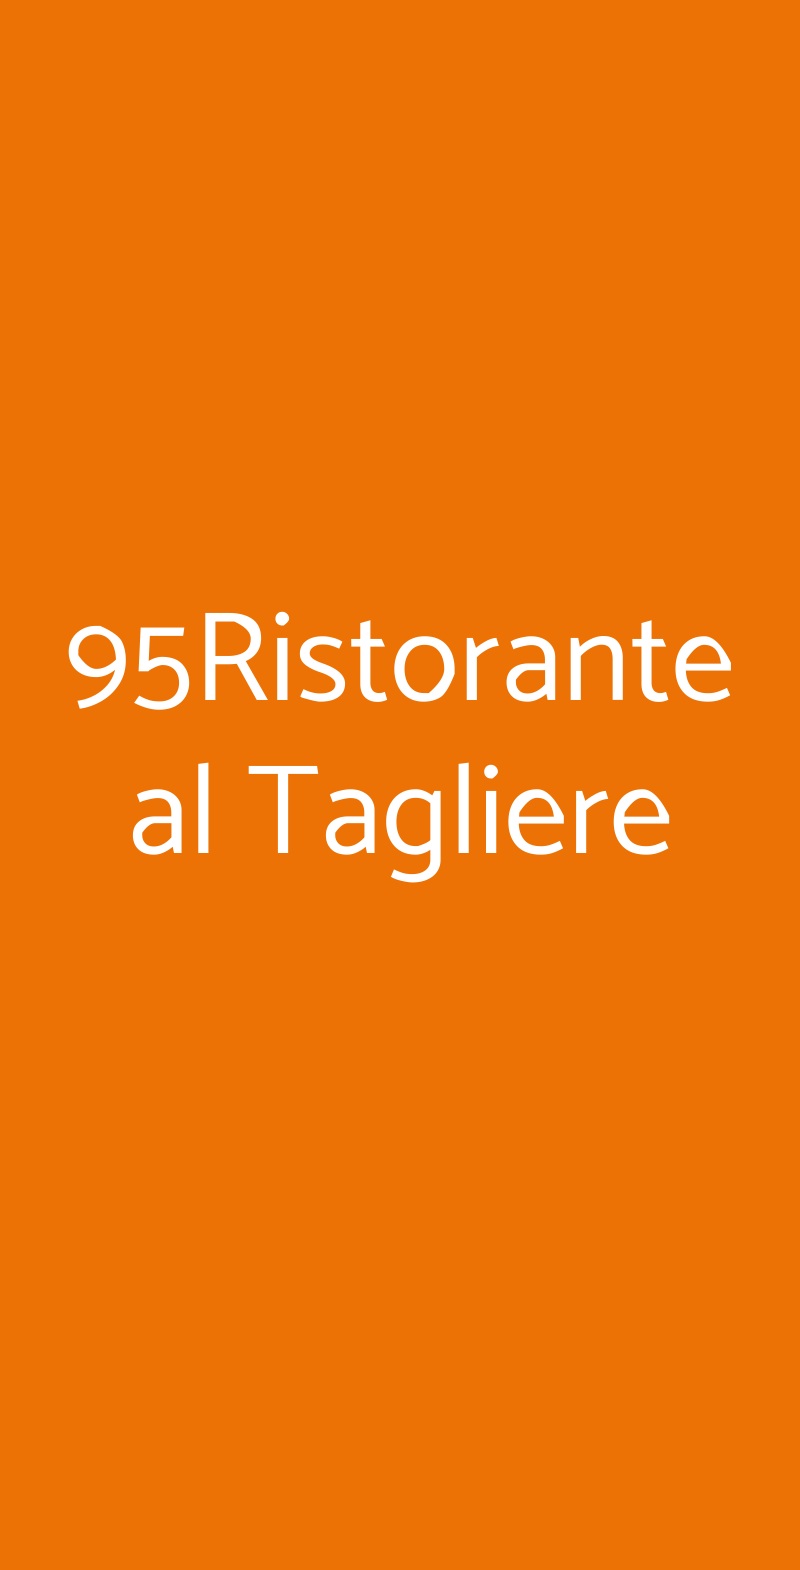 95Ristorante al Tagliere Barlassina menù 1 pagina